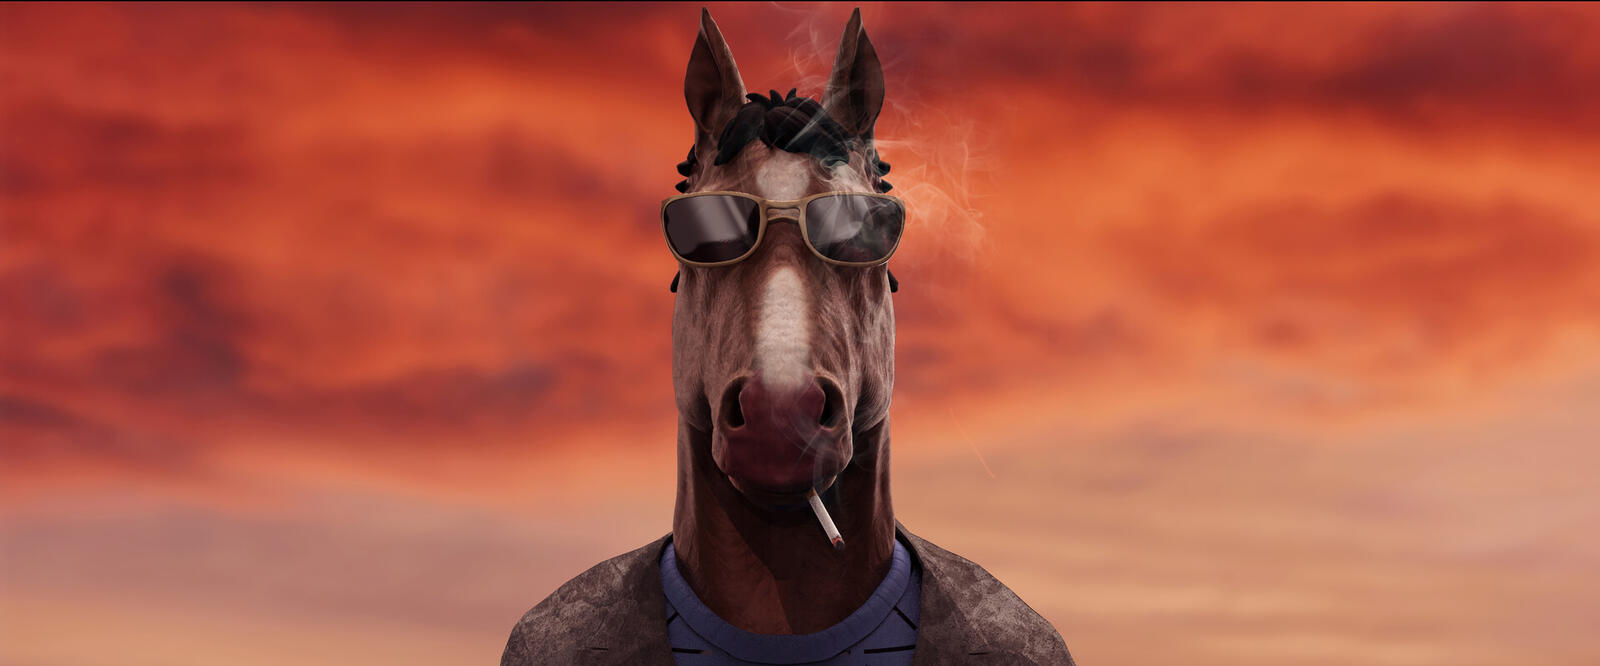 Бесплатное фото Брутальный конь в очках